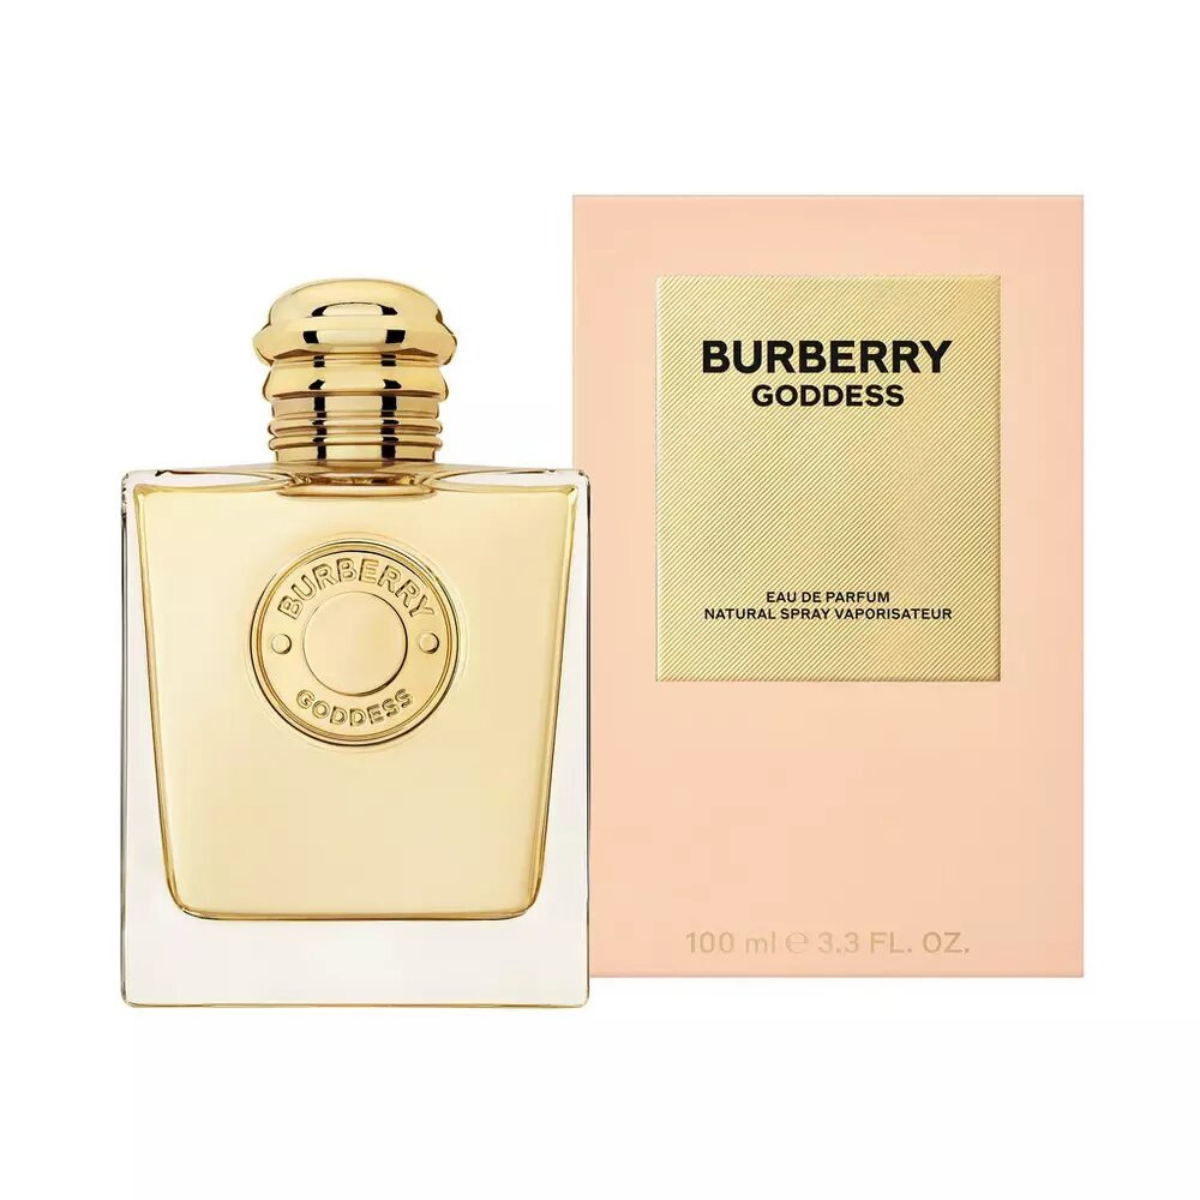 Burberry Goddess Eau de Parfum